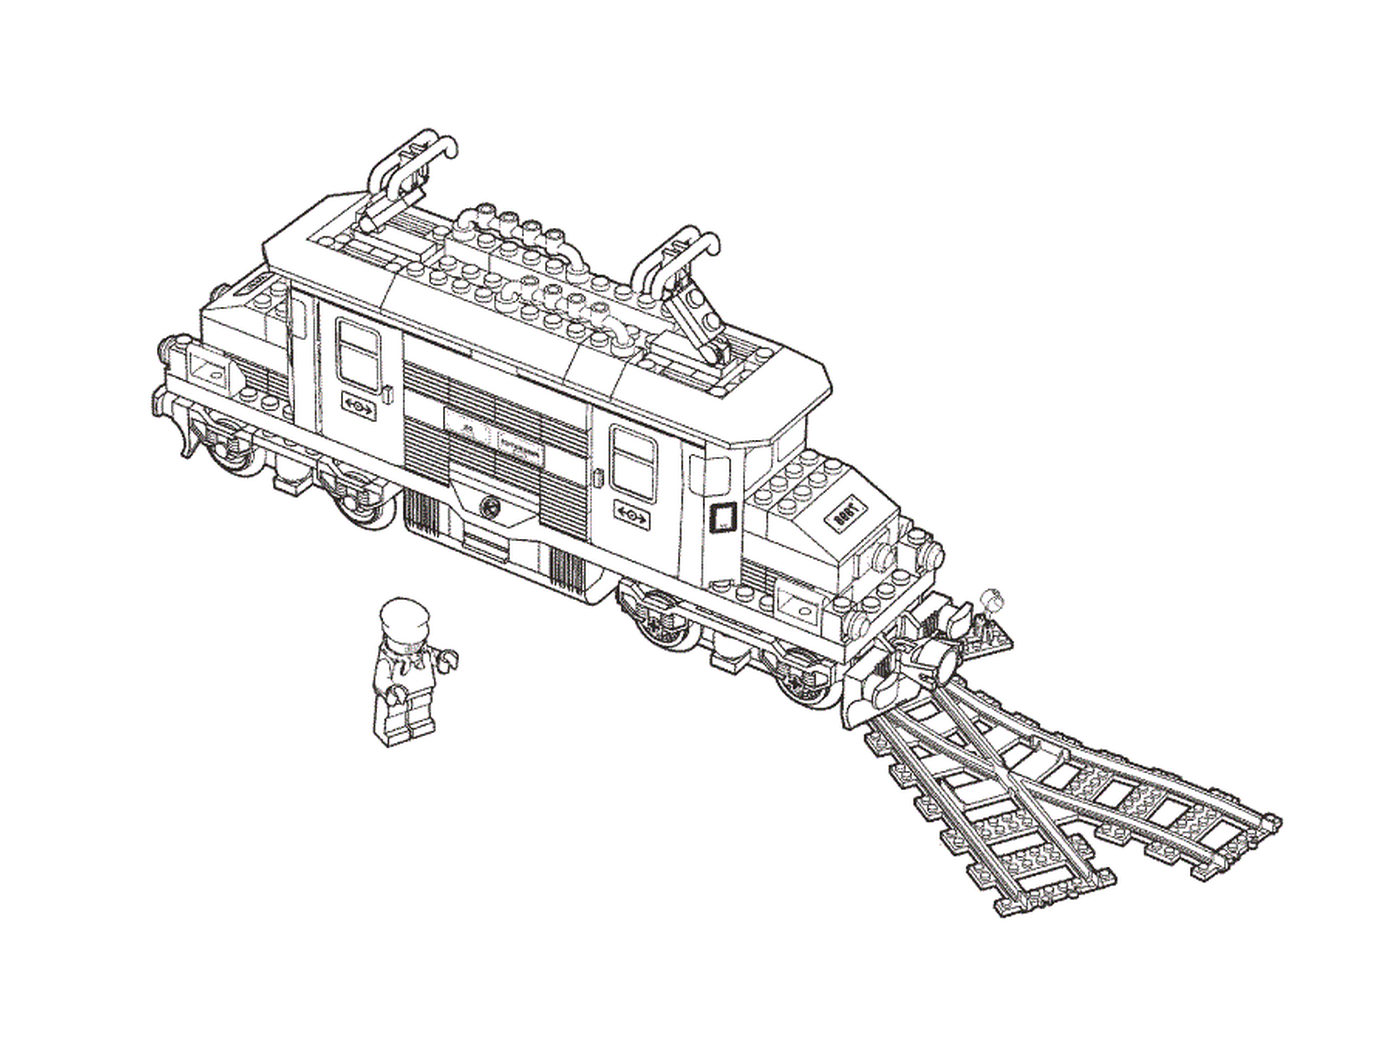  Desenho de um trem de brinquedo Lego 